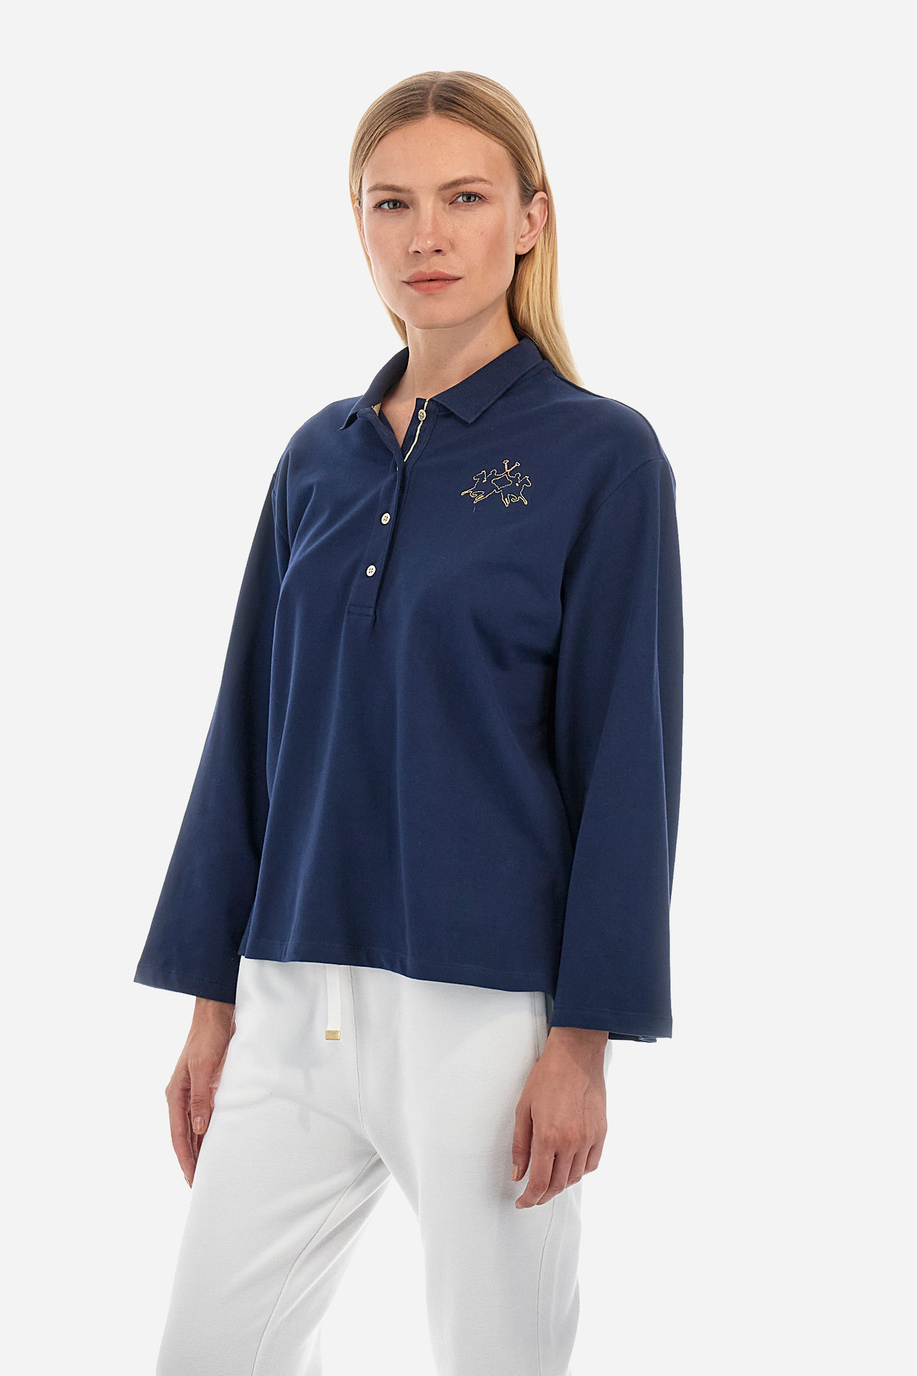 Damen -Poloshirt regular fit - Welch - Timeless | La Martina - Official Online Shop